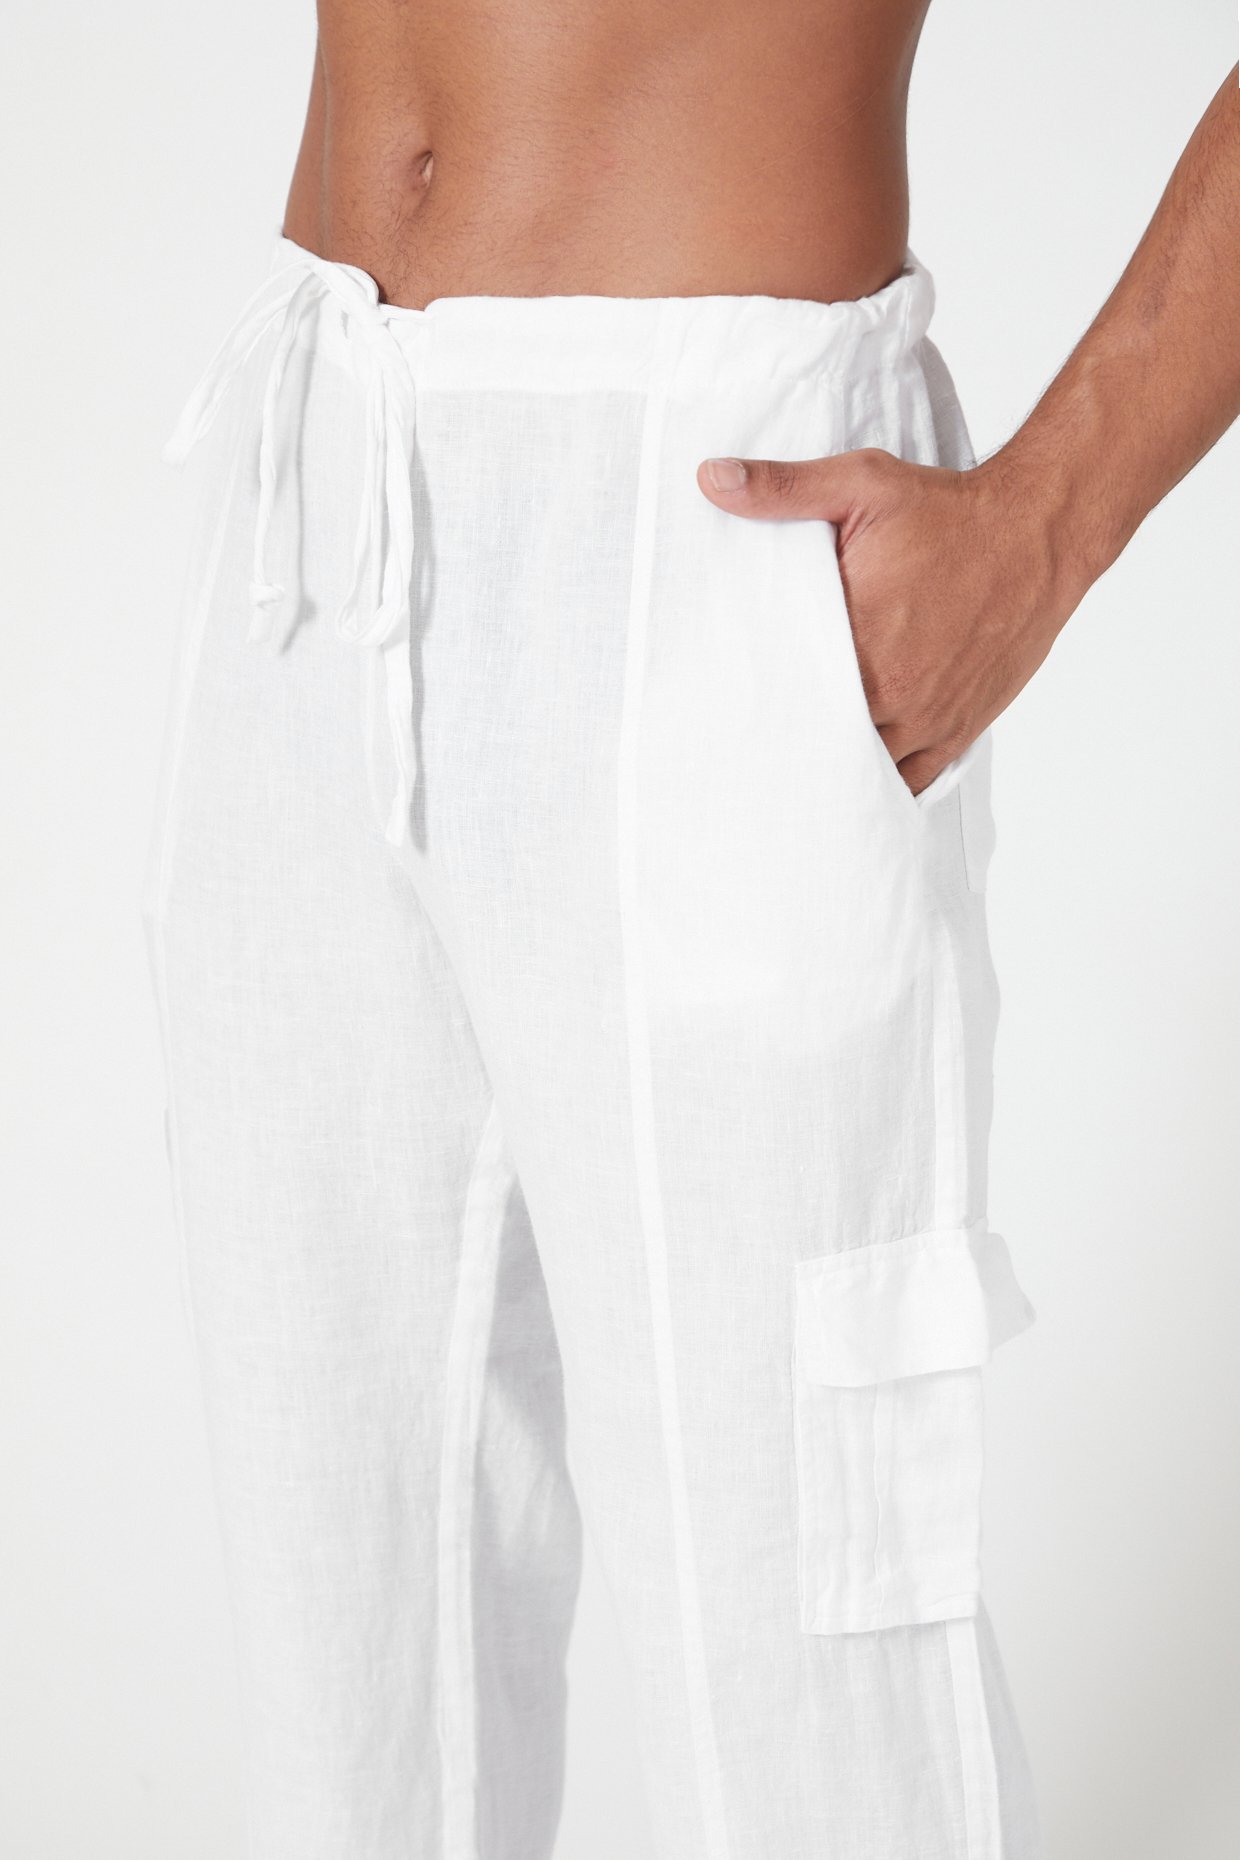 CottonLinen Plain Blue cargo pants for men Size 2836